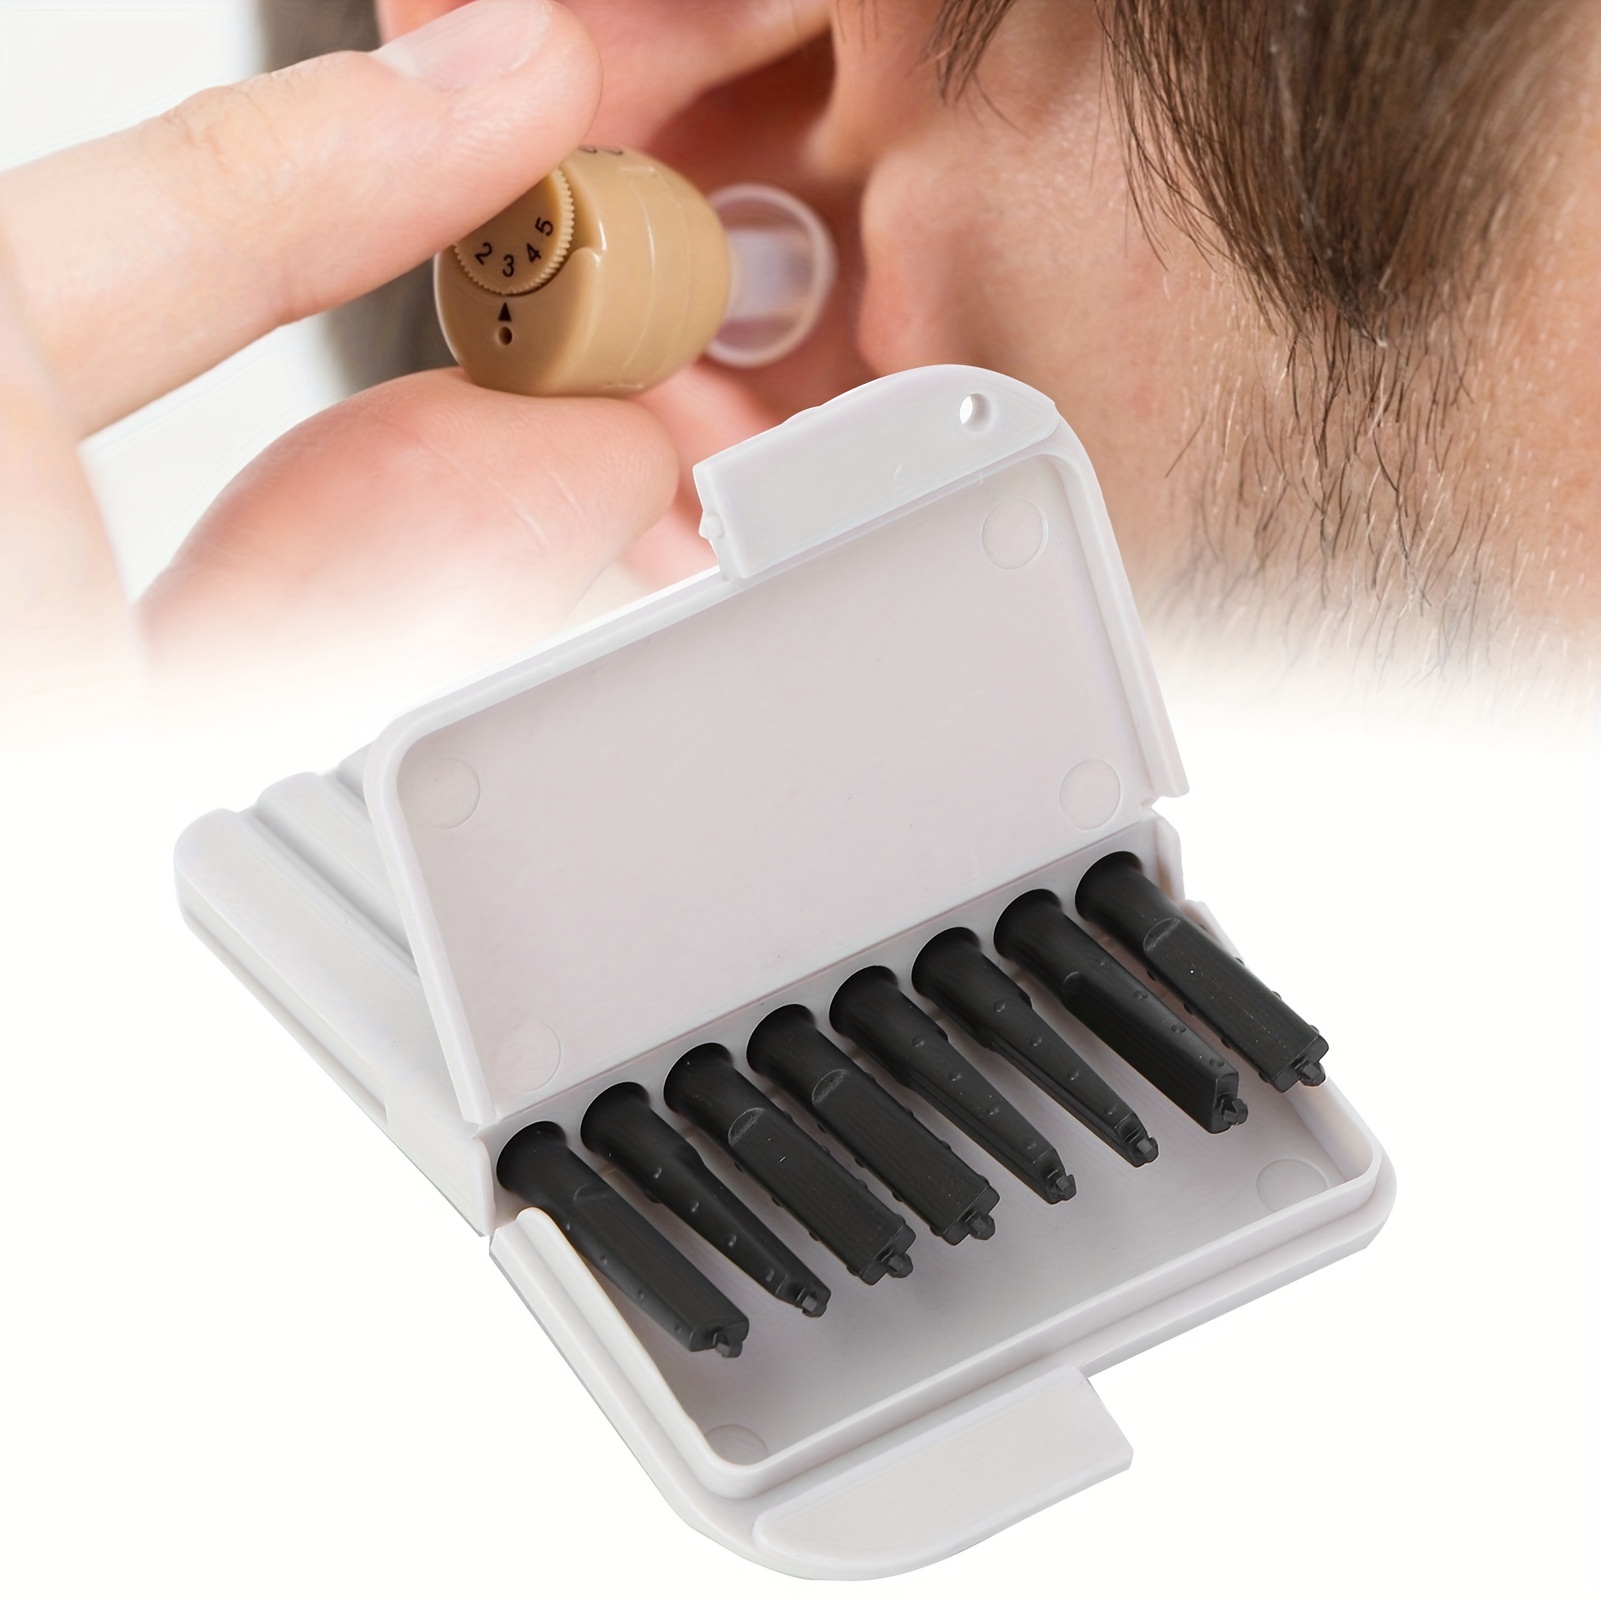 Kit de limpieza de oído (6 hisopos magicos)